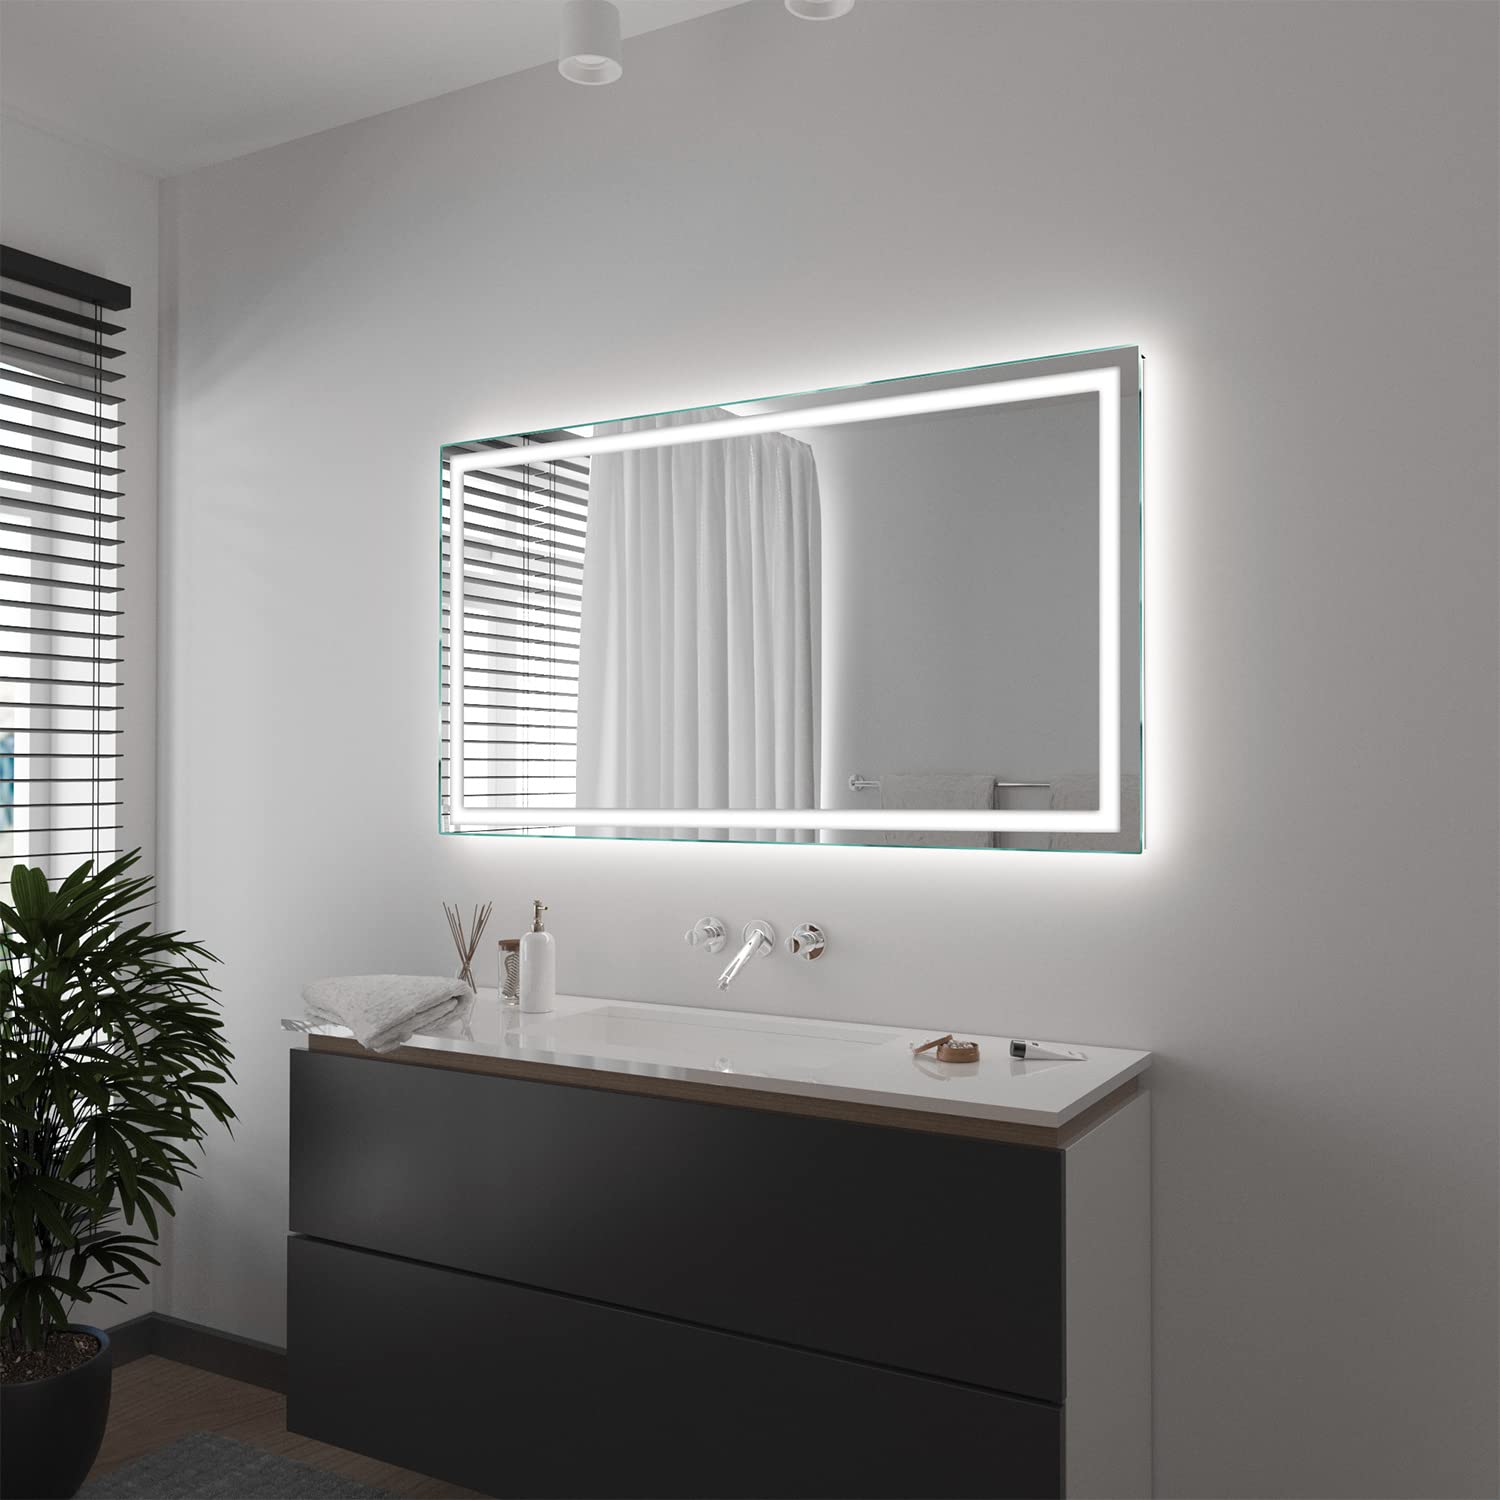 SARAR Wandspiegel mit rundum LED-Beleuchtung 130x70 cm Made in Germany Toulon eckiger Badspiegel Spiegel mit Beleuchtung Badezimmerspiegel